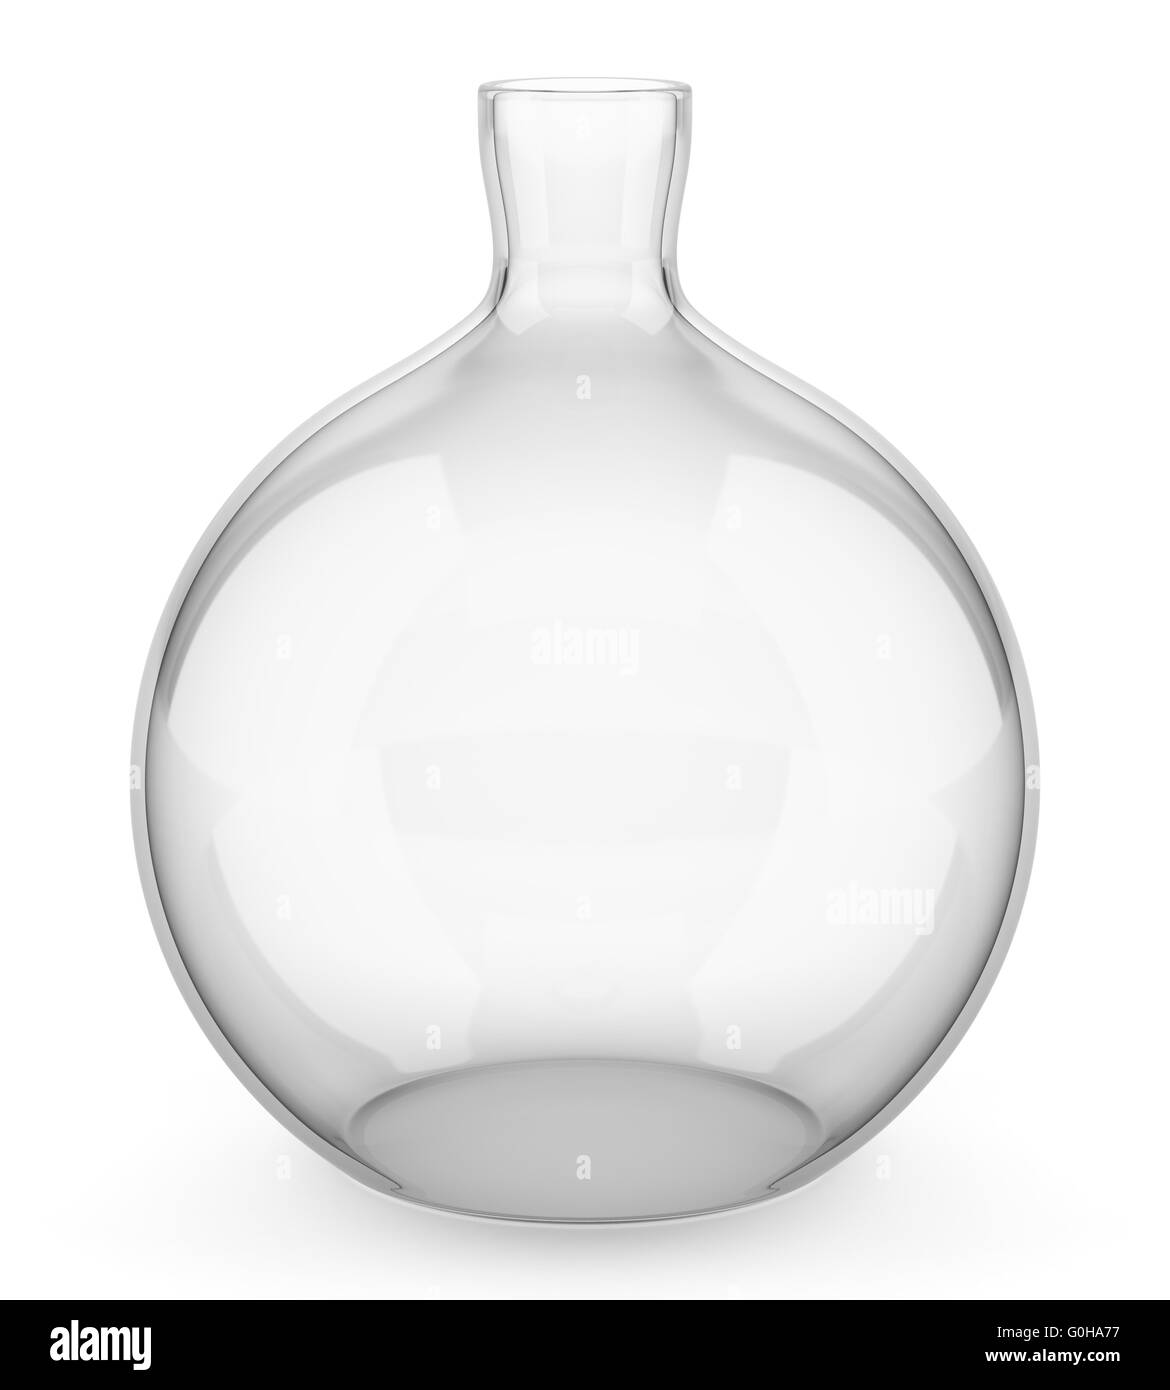 glass vase isolated on white background Stock Photo